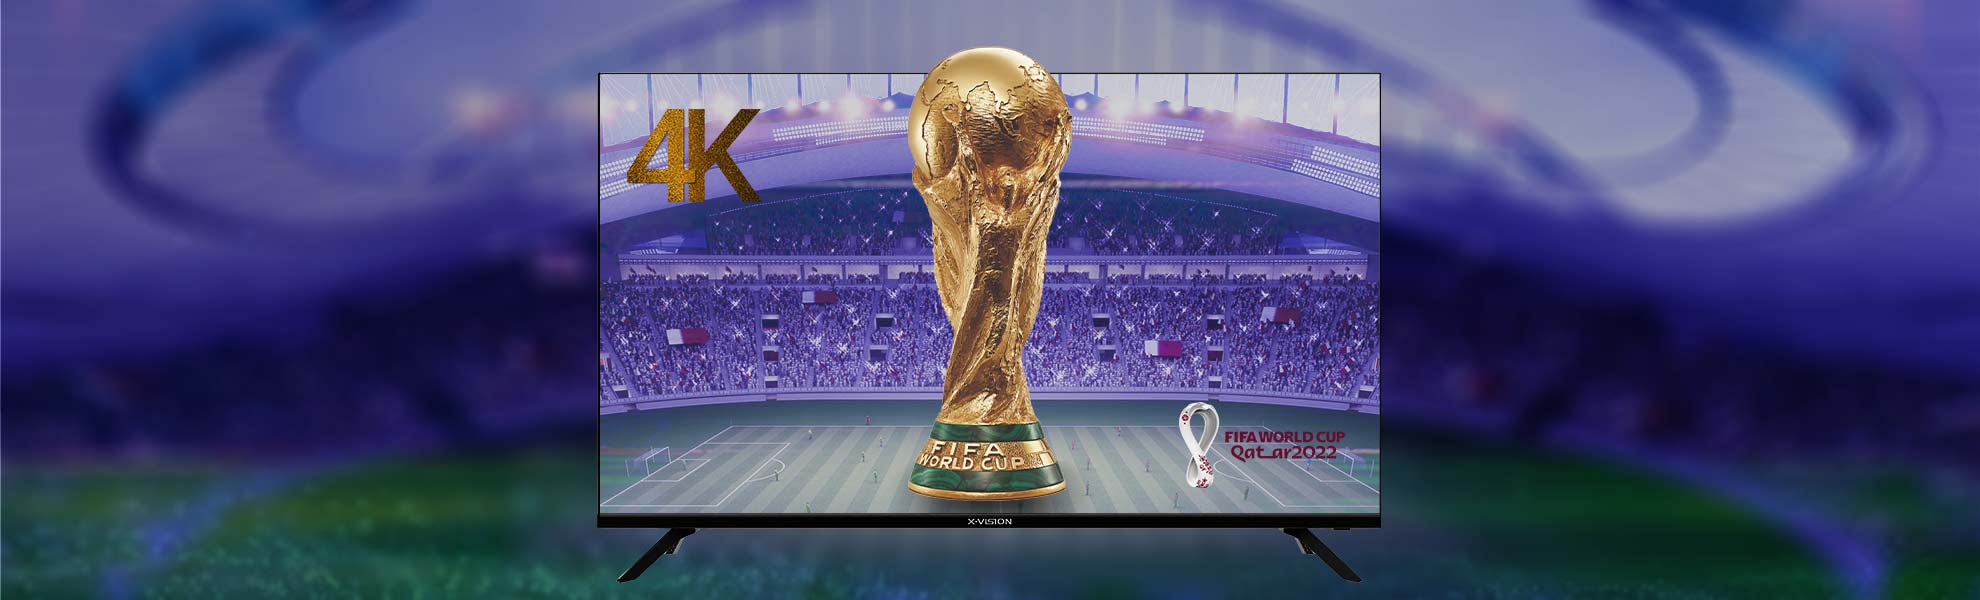 ⚽ کیفیت تصویر 4K در جام جهانی فوتبال 2022 دنیا را شگفت زده می کند!